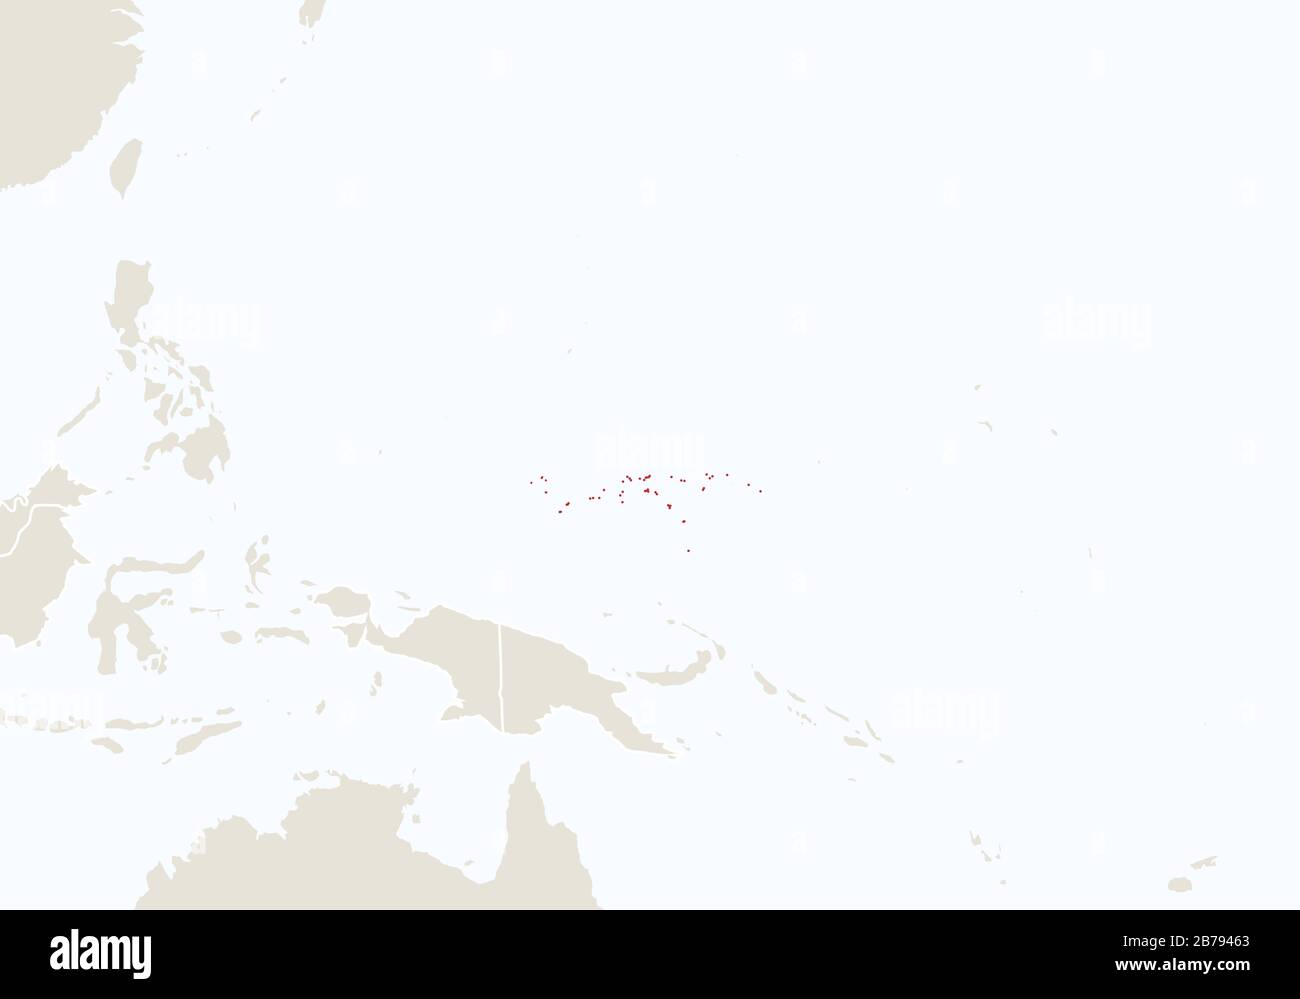 Océanie avec carte de Micronésie en surbrillance. Illustration Vectorielle. Illustration de Vecteur